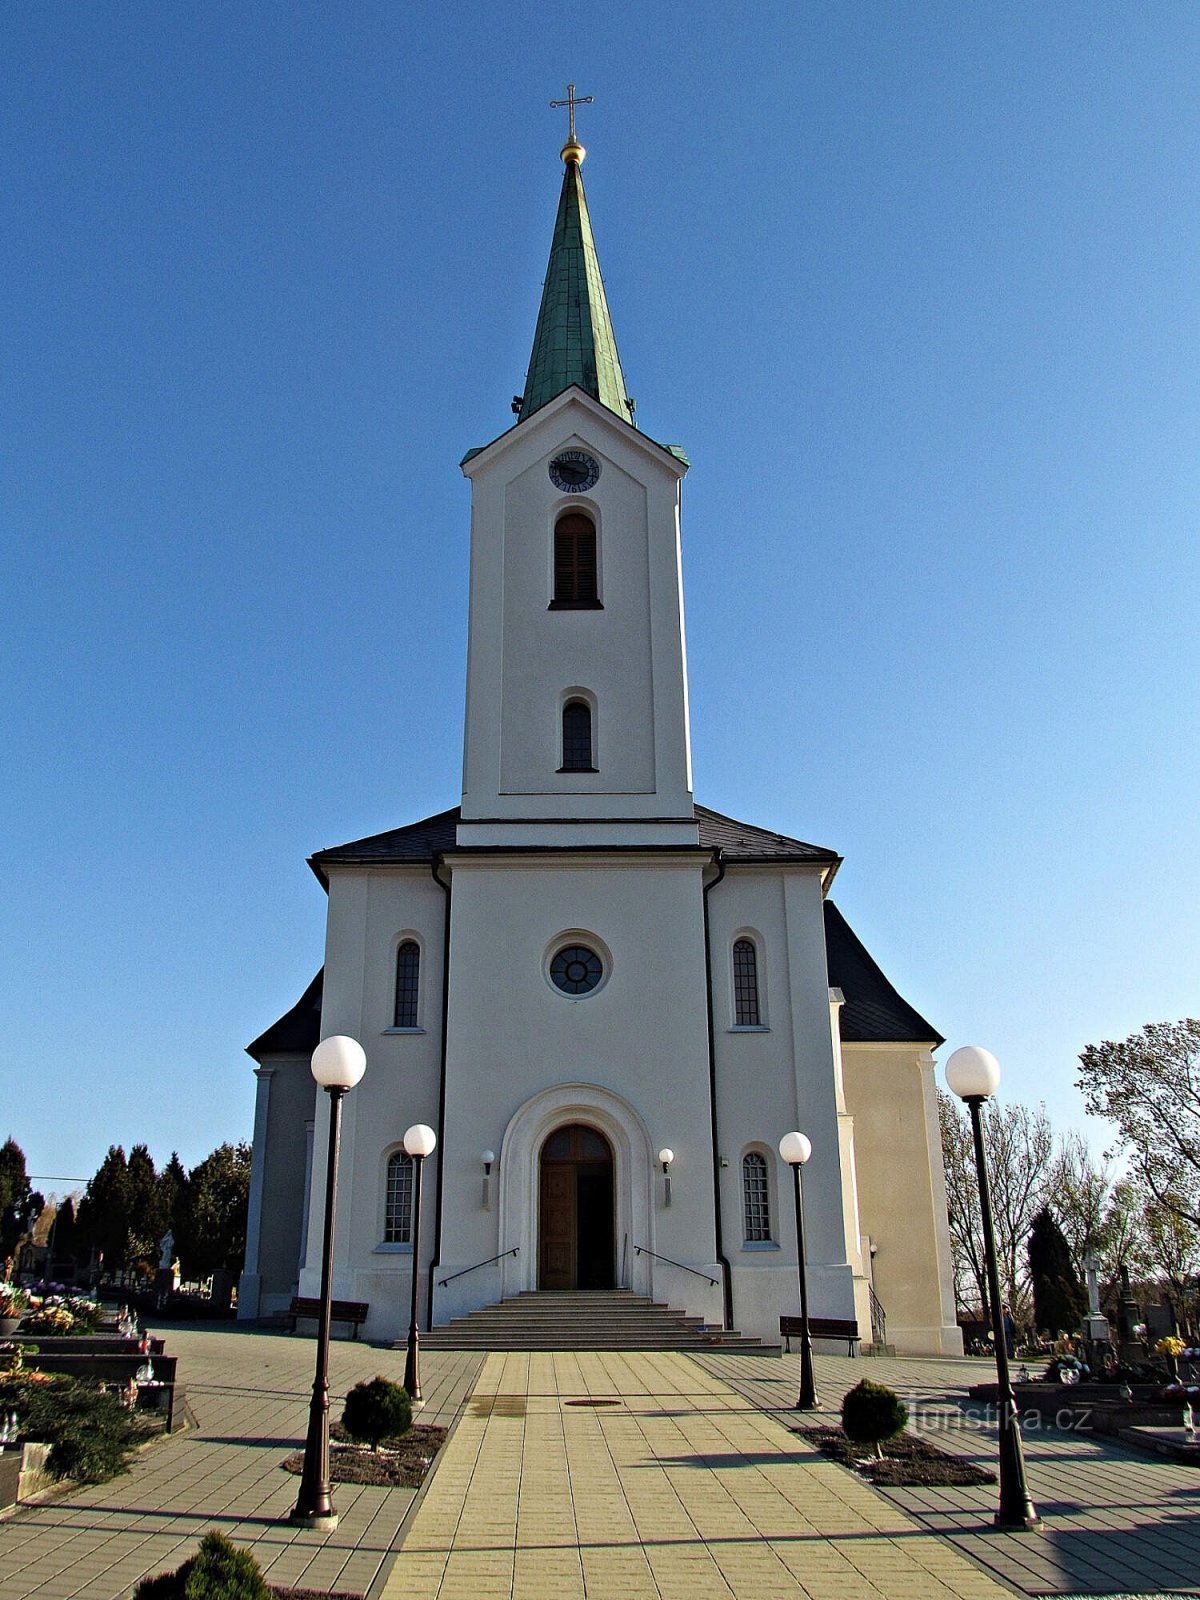 St. Vojtěch 斯拉维钦教堂